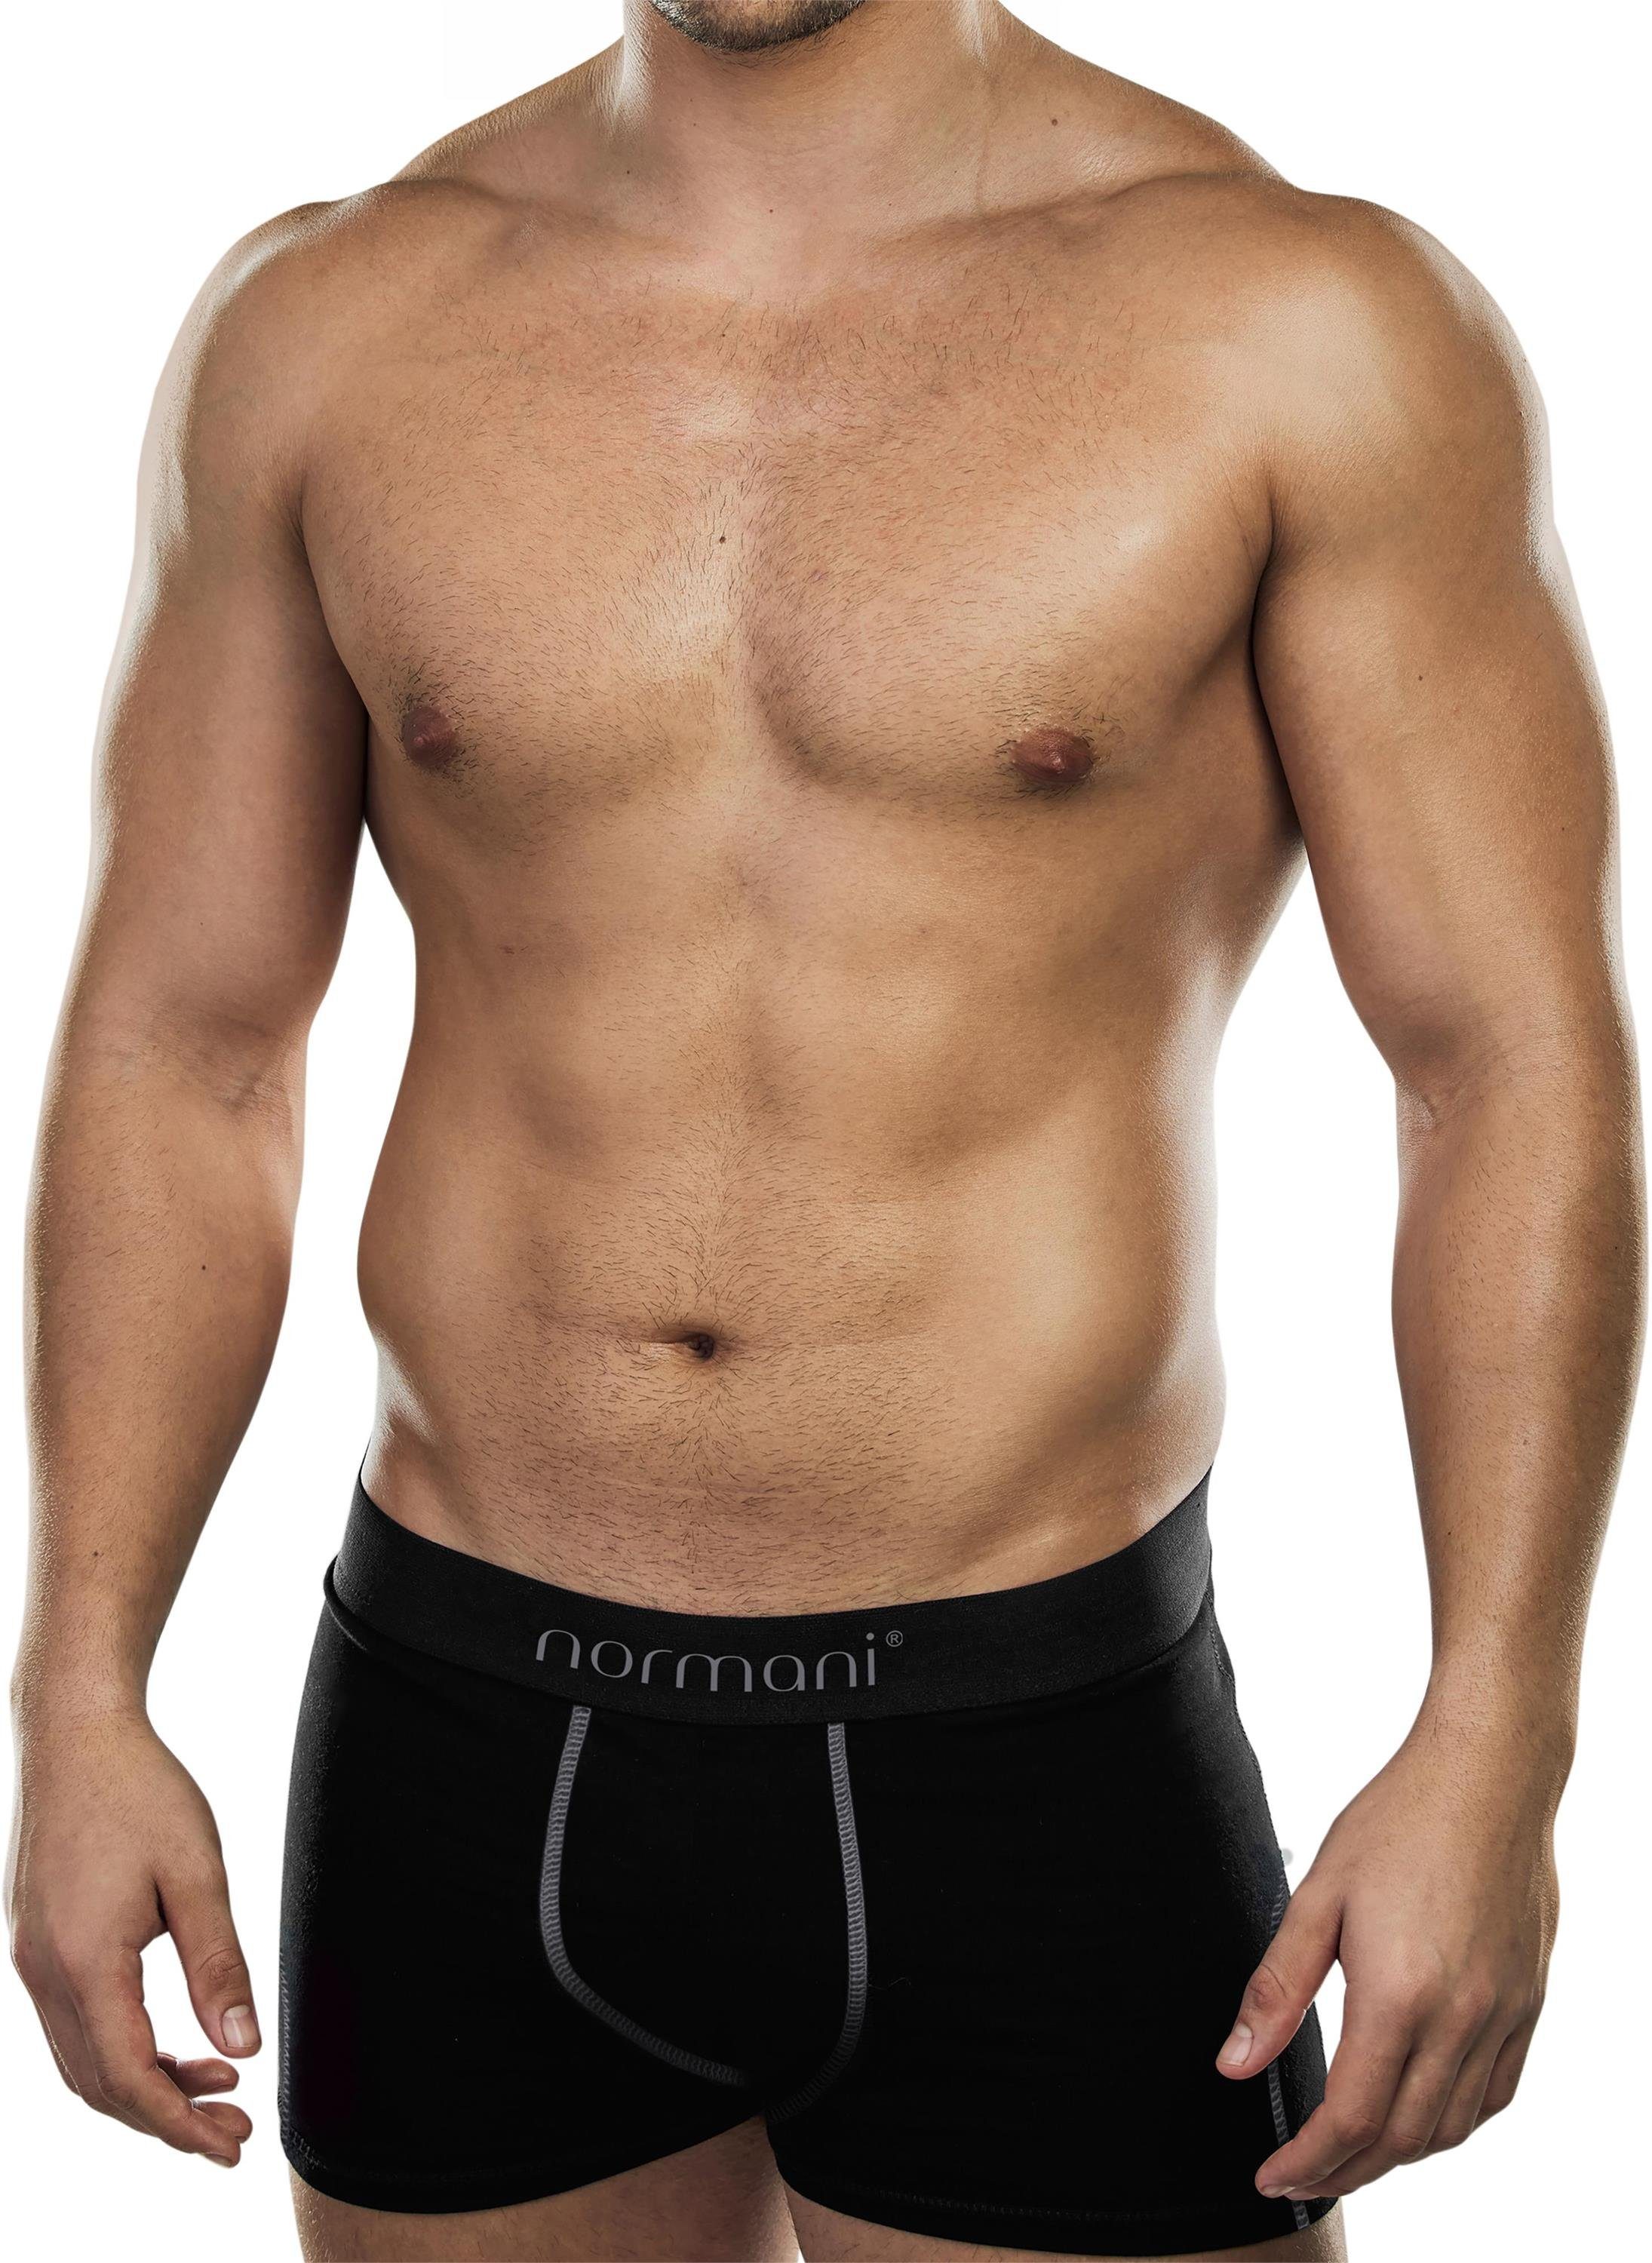 normani Boxershorts 6 weiche Boxershorts aus Baumwolle Unterhose aus atmungsaktiver Baumwolle für Männer Grau